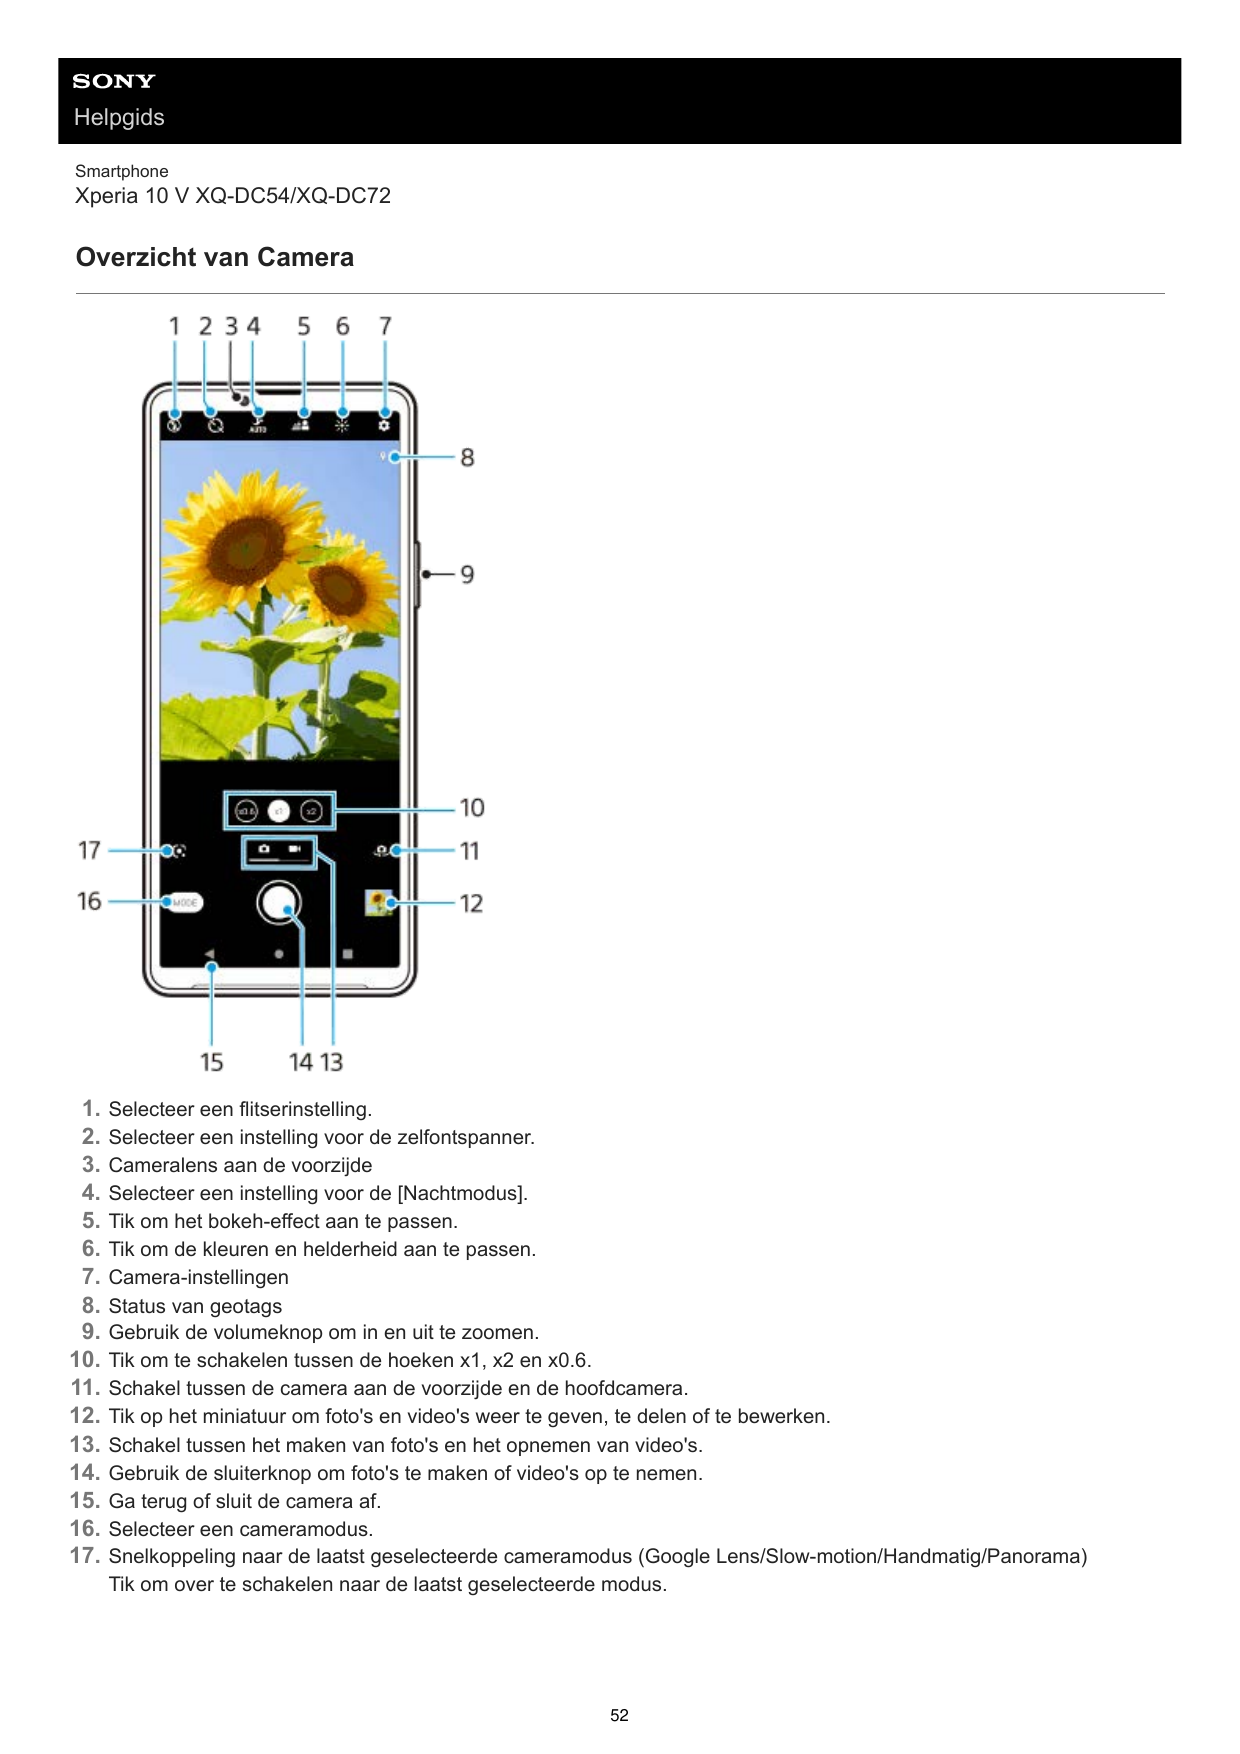 HelpgidsSmartphoneXperia 10 V XQ-DC54/XQ-DC72Overzicht van Camera1.2.3.4.5.6.7.8.9.10.11.12.13.14.15.16.17.Selecteer een flitser